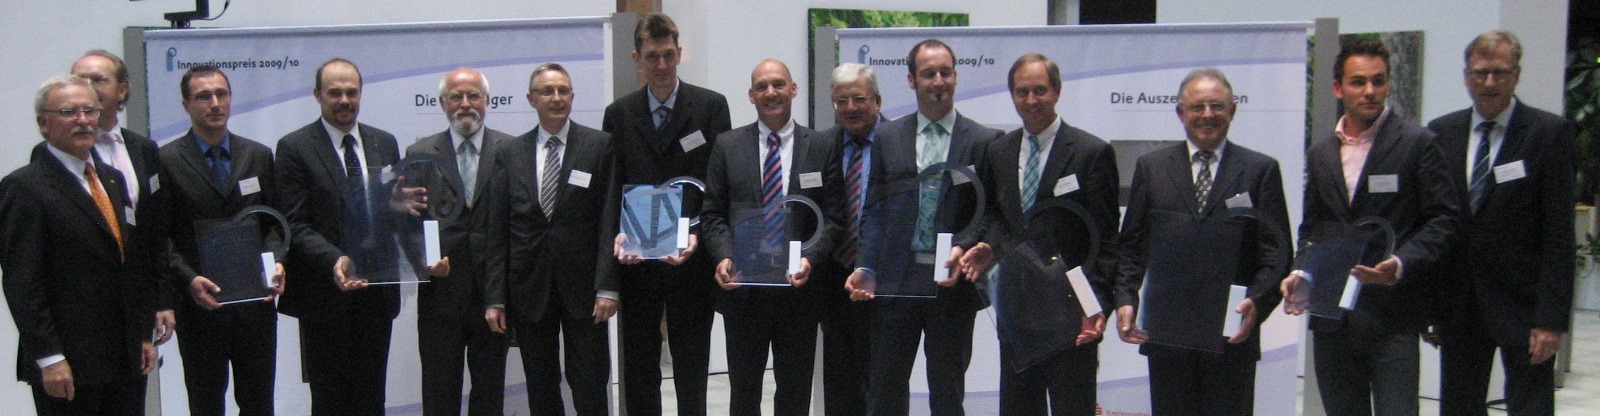 Innovationspreis 2009/2010